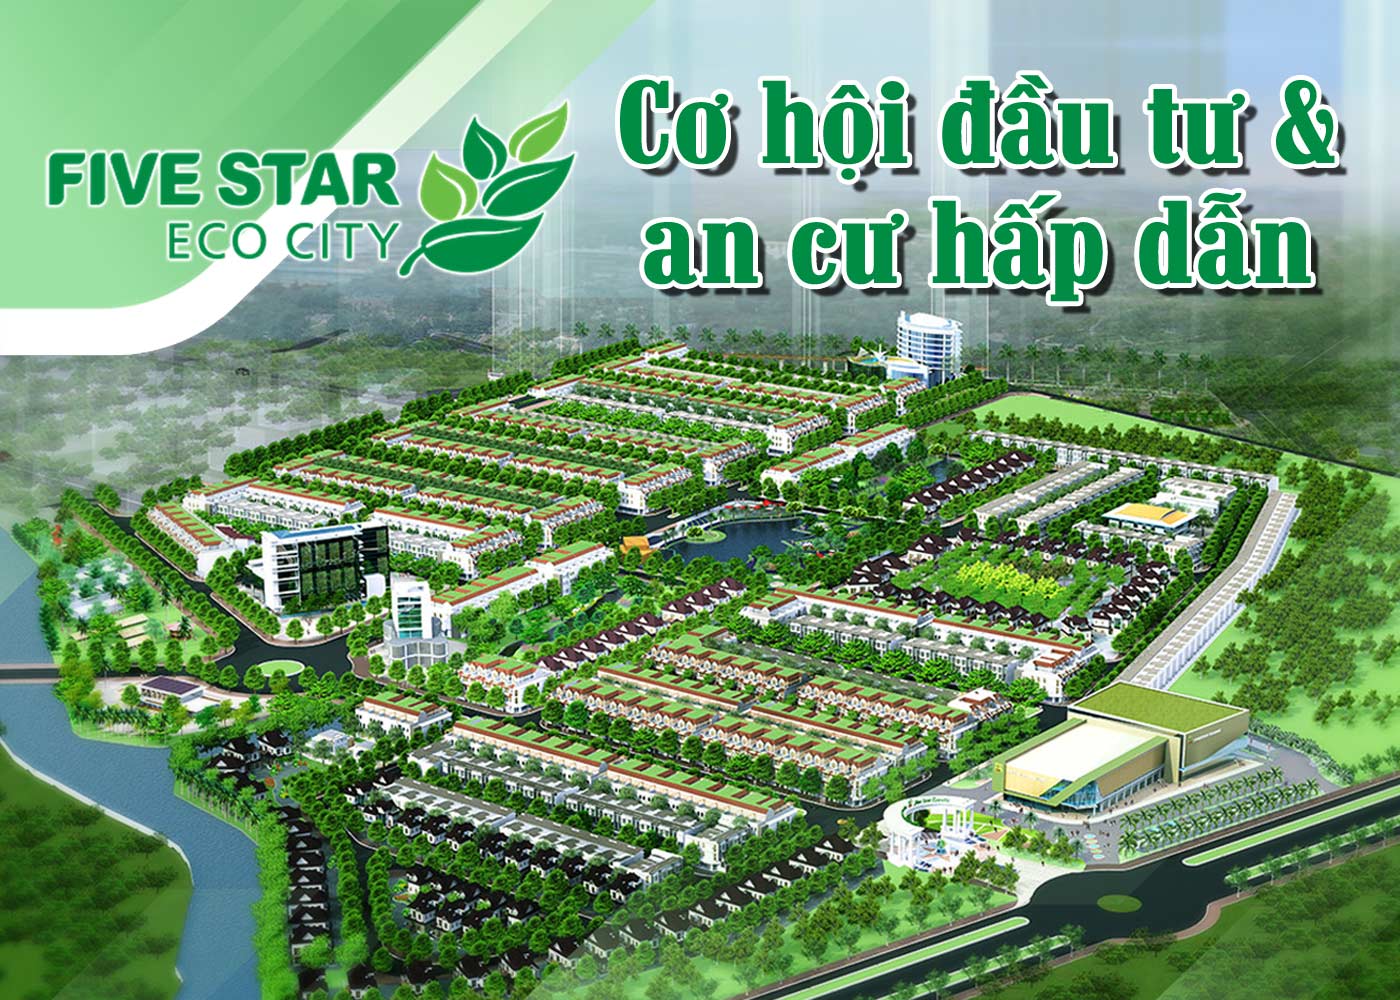 Five Star Eco City - cơ hội đầu tư và an cư hấp dẫn - Ảnh 1